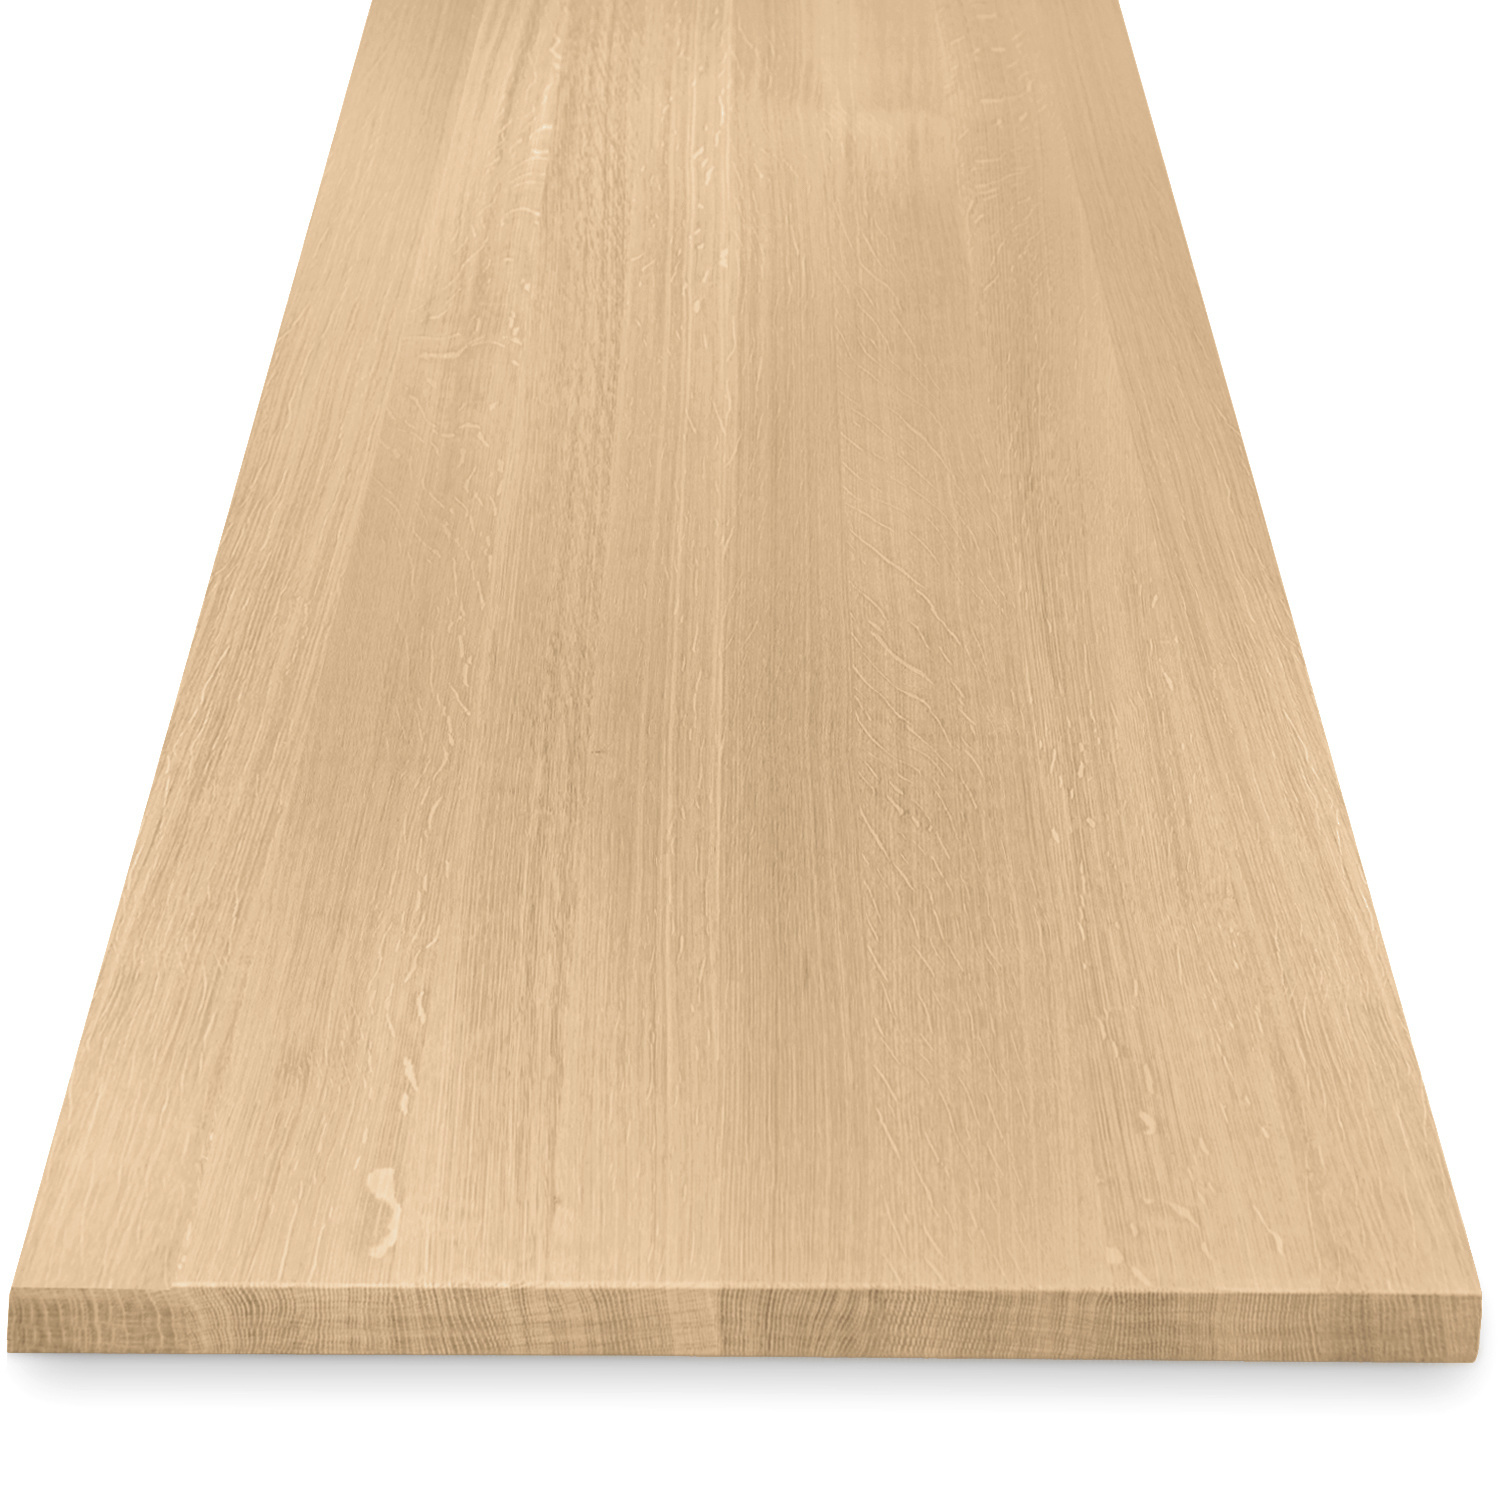  Eiken tafelblad op maat - 4 cm dik (1-laag) - foutvrij Europees eikenhout - met brede lamellen (circa 10-12 cm) - verlijmd kd 8-12% - 50-120x50-248 cm